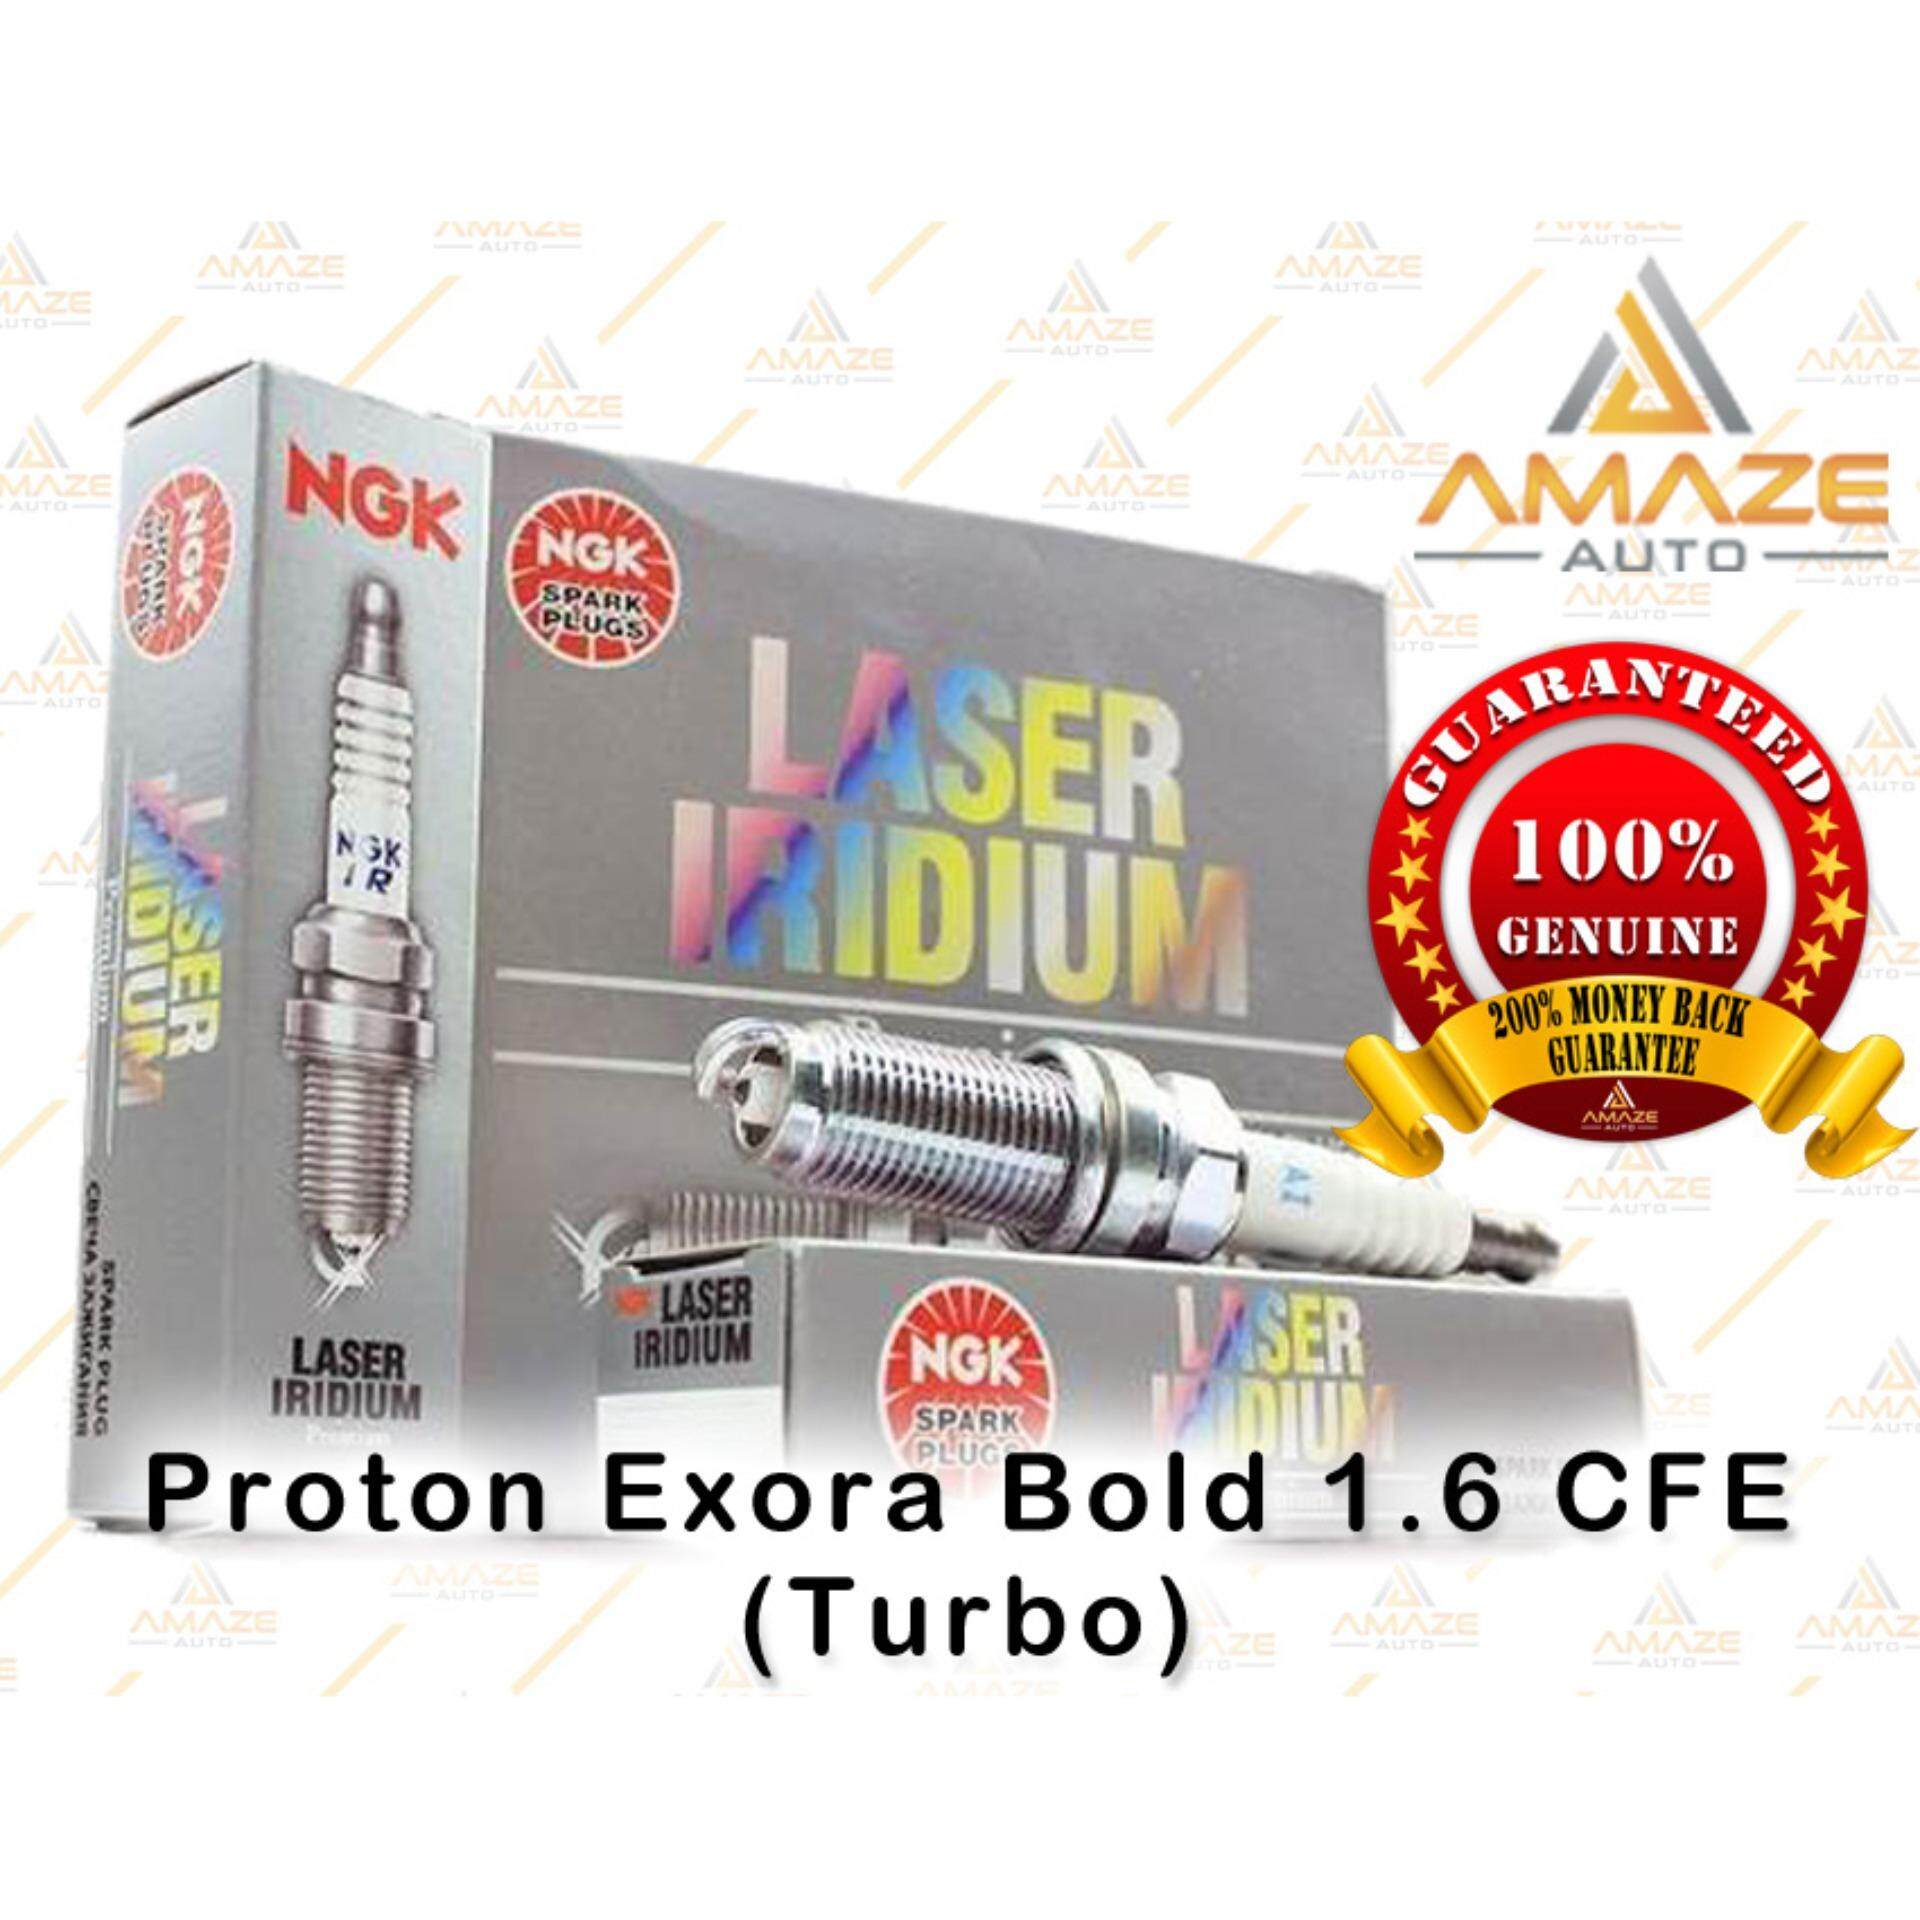 NGK Laser Iridium Spark Plug for Proton Exora Bold 1.6 CFE (Turbo)